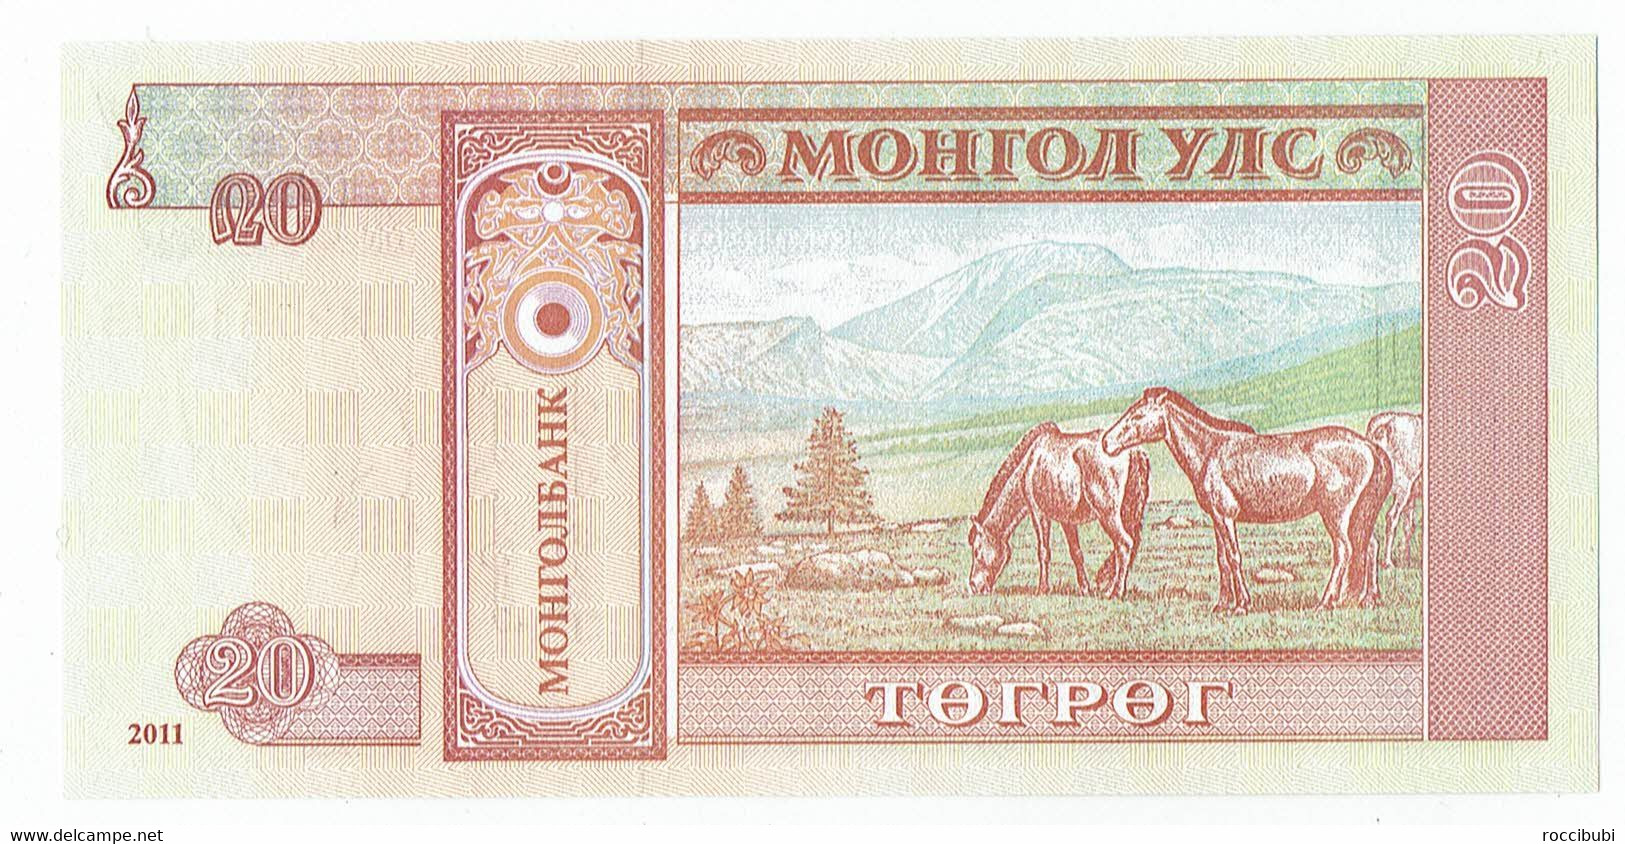 Mongolei, Banknote - Mongolei